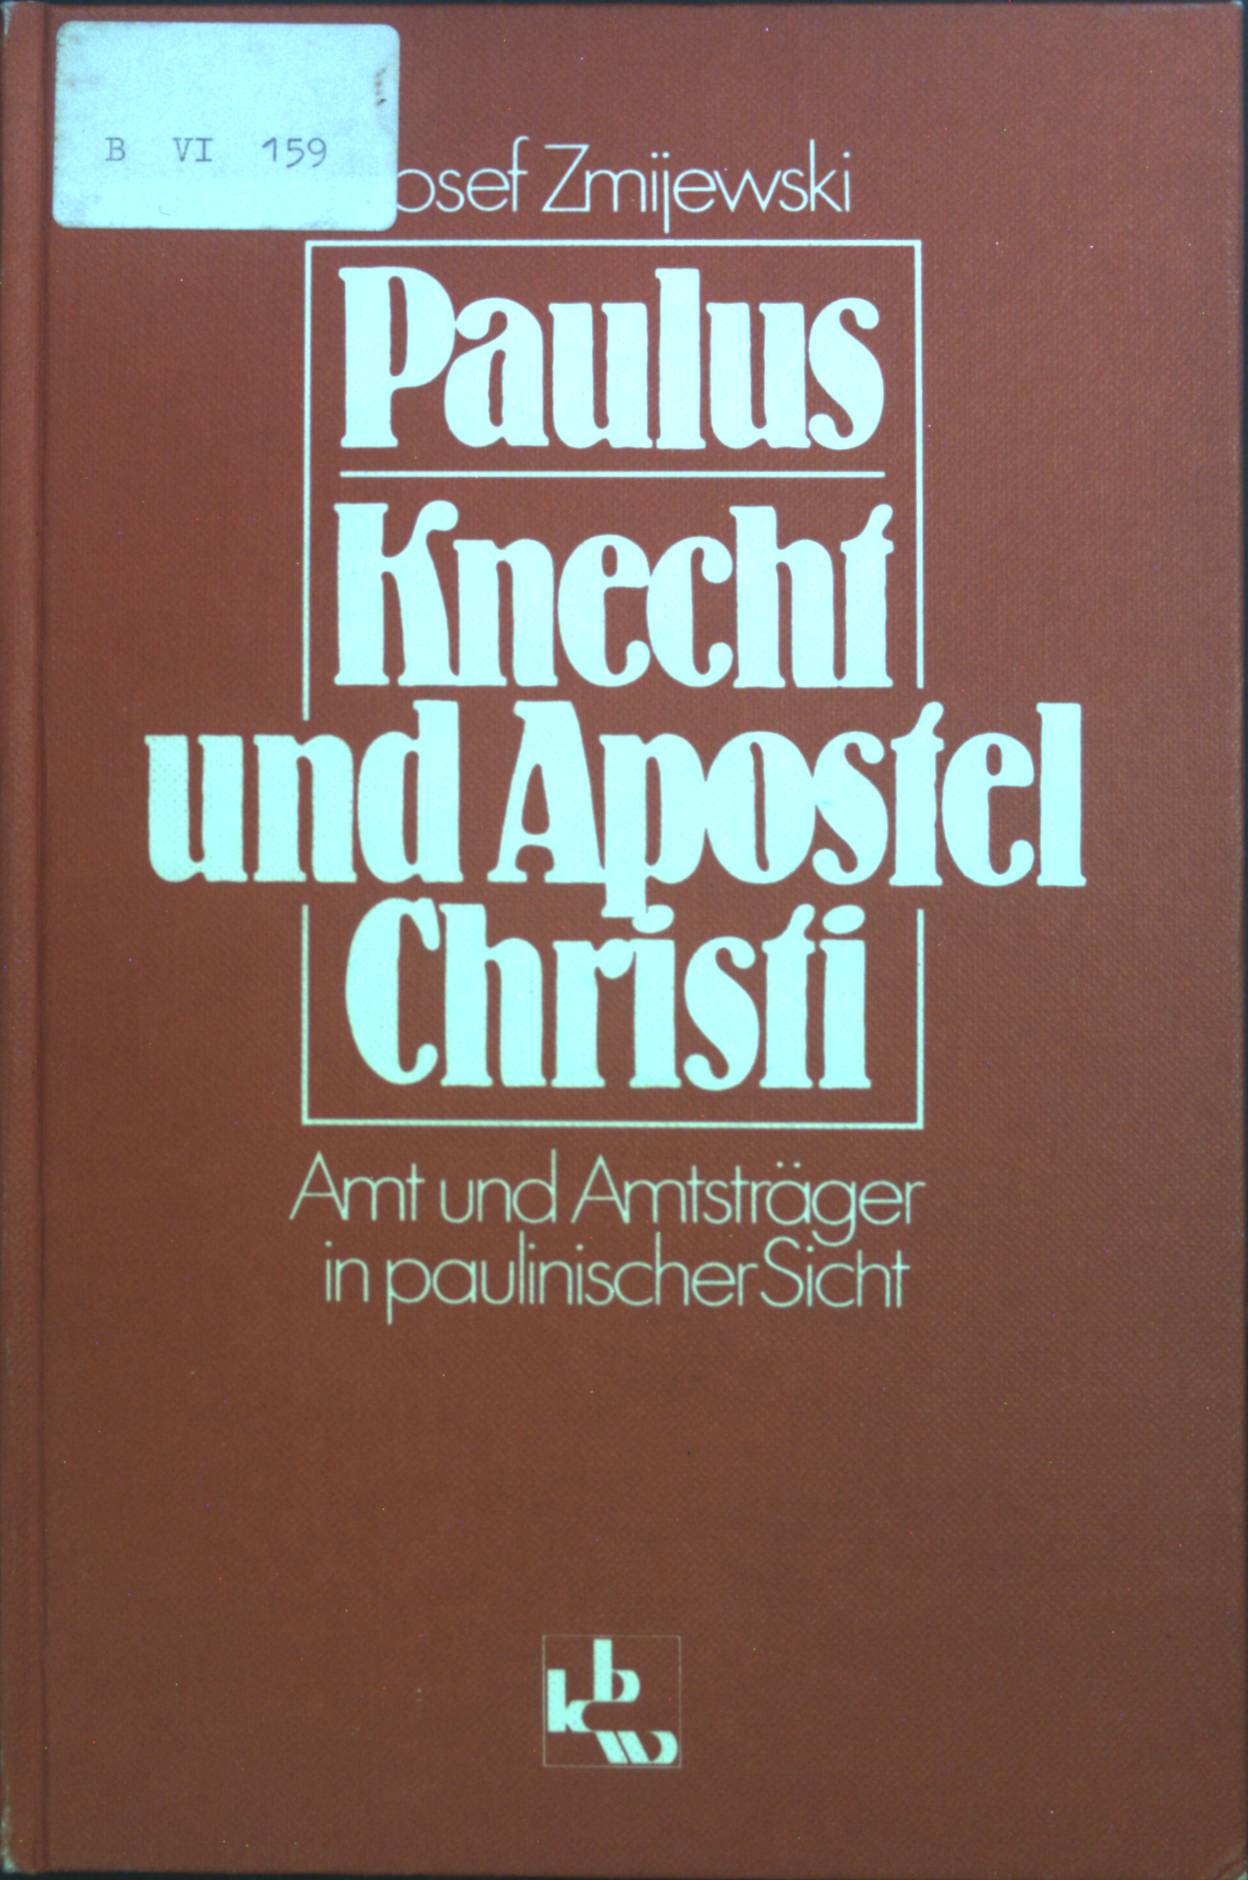 Paulus - Knecht und Apostel Christi : Amt und Amtsträger in paulinischer Sicht. - Zmijewski, Josef